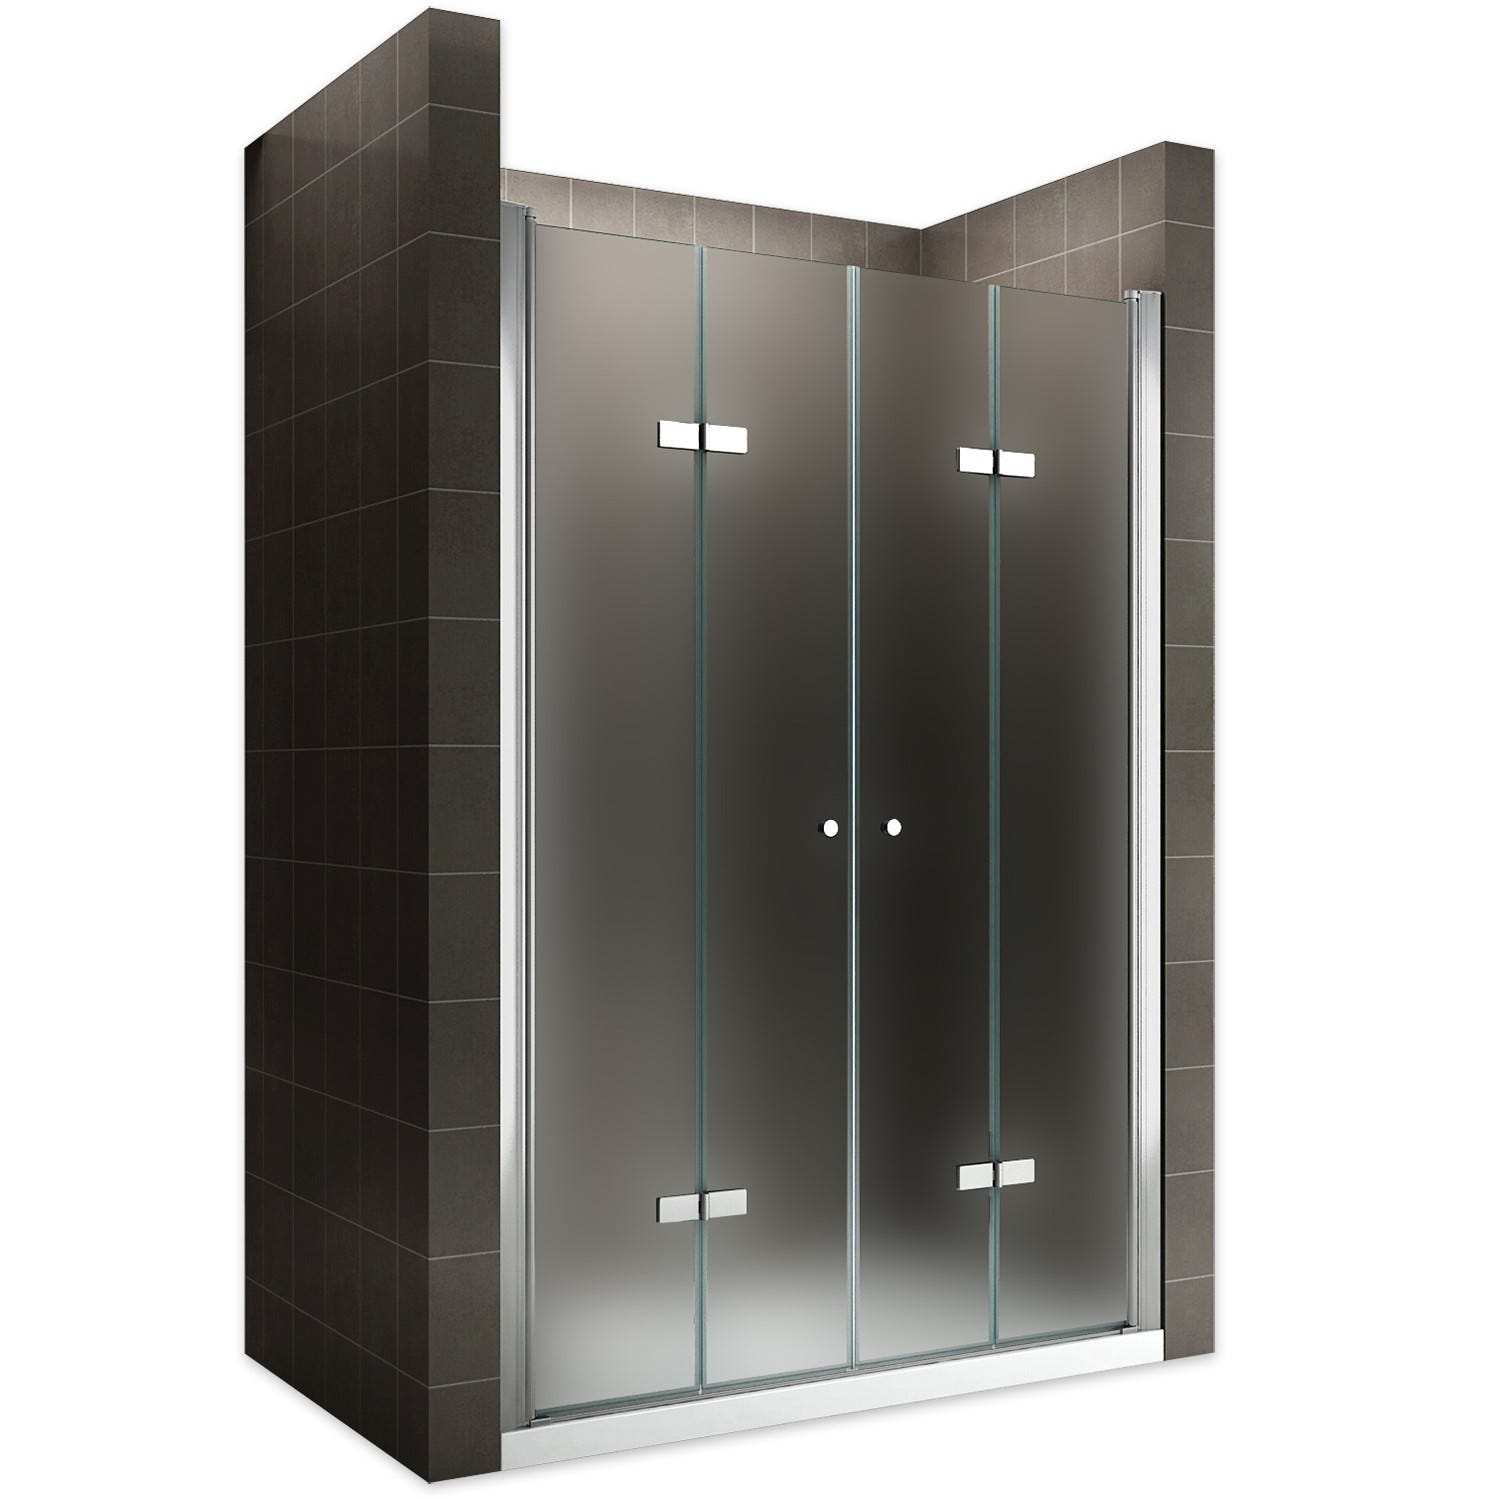 EMMY Porte de douche pliante pivotante H 185 cm largeur réglable 108 à 112 cm verre opaque 0